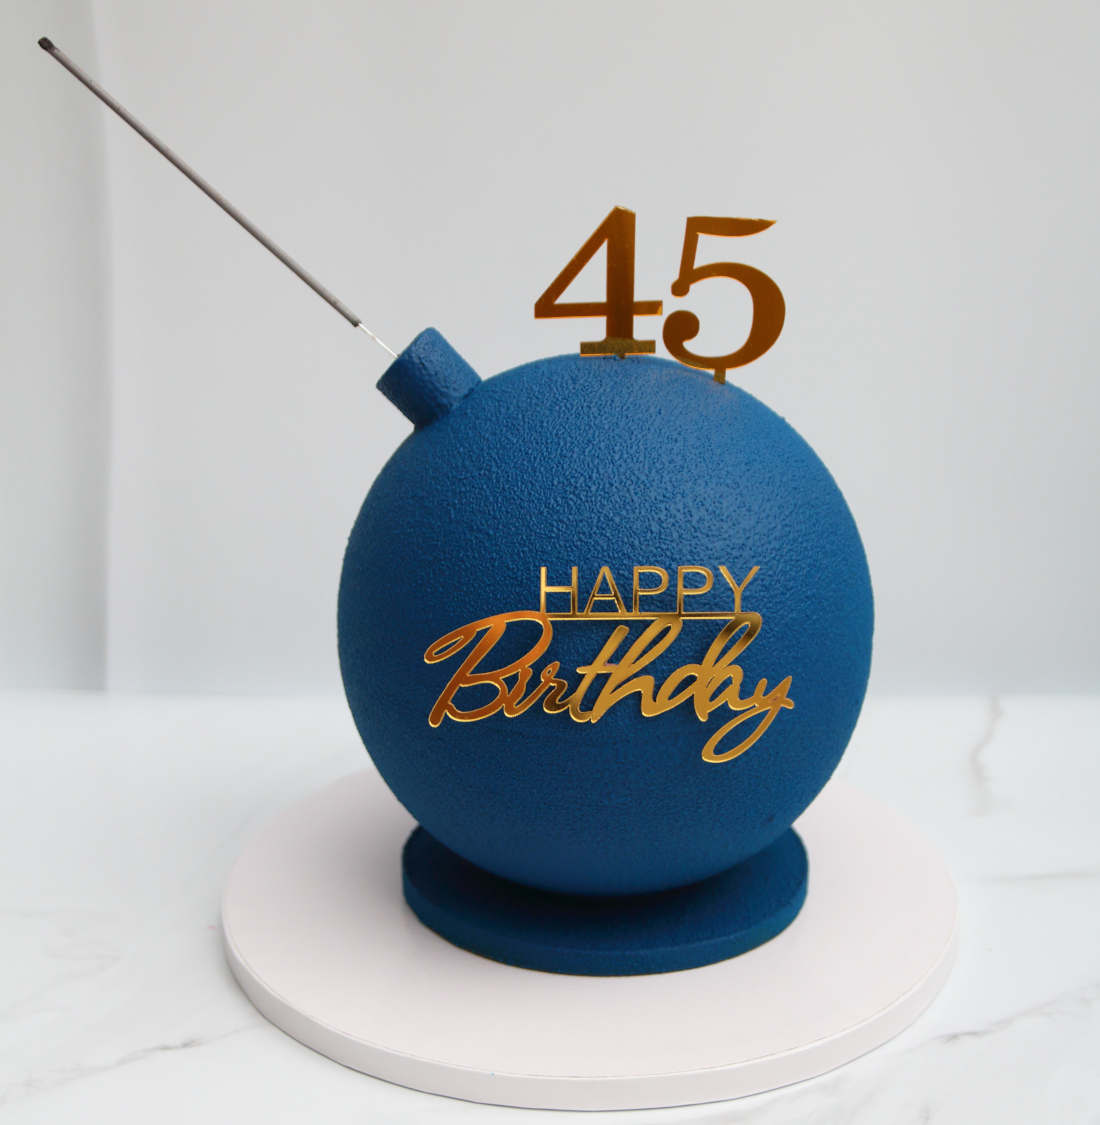 Возраст именинника на торте-бомбе для дня рождения - 45 лет